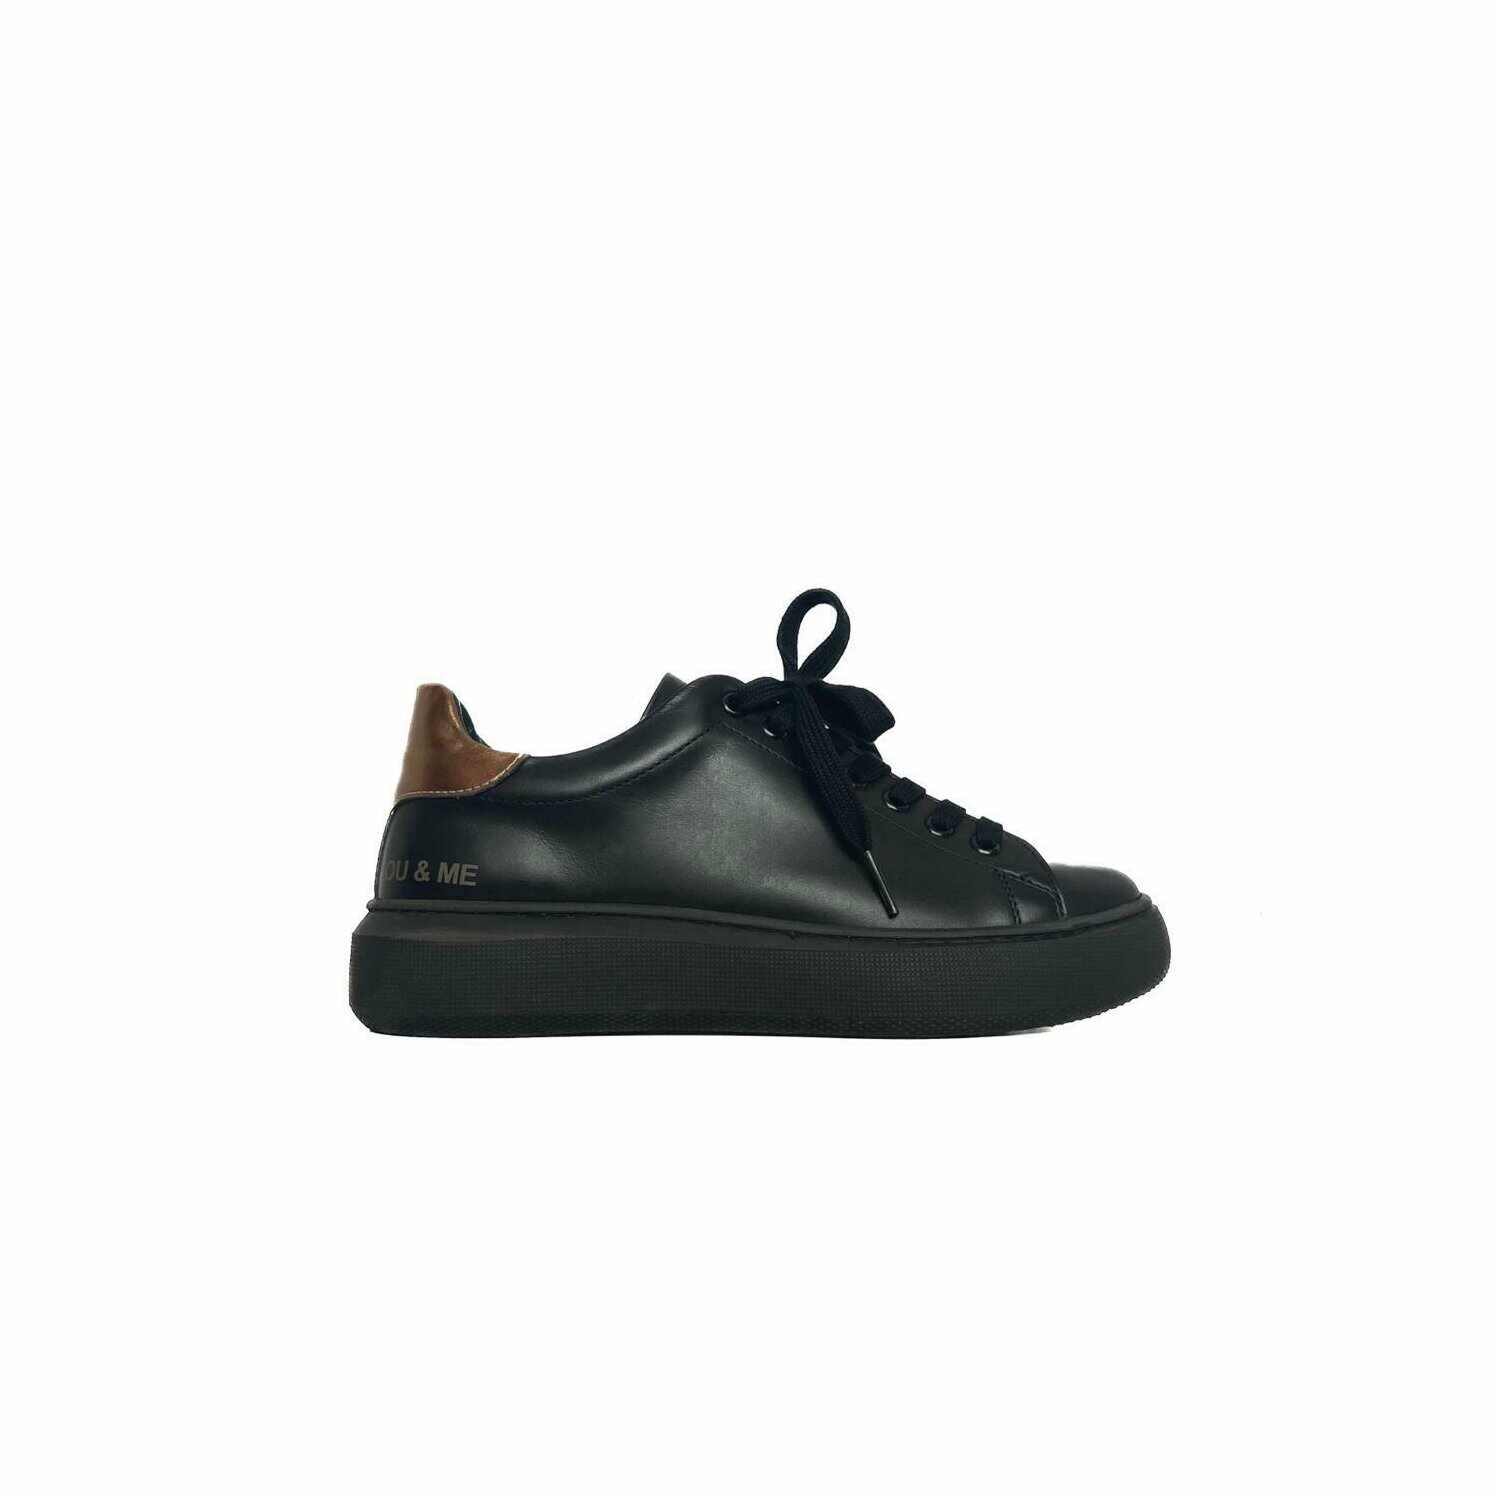 Sneakers damă din piele naturală, Leofex - 310 Negru/bronz box